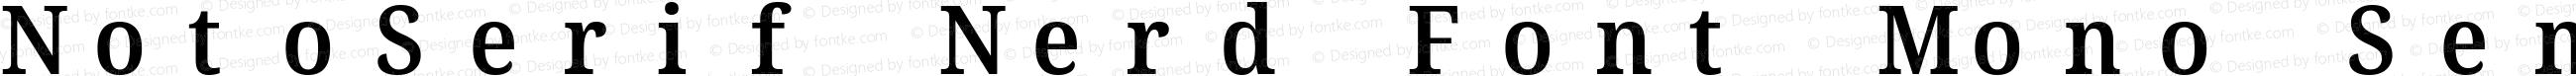 Noto Serif SemiCondensed SemiBold Nerd Font Complete Mono